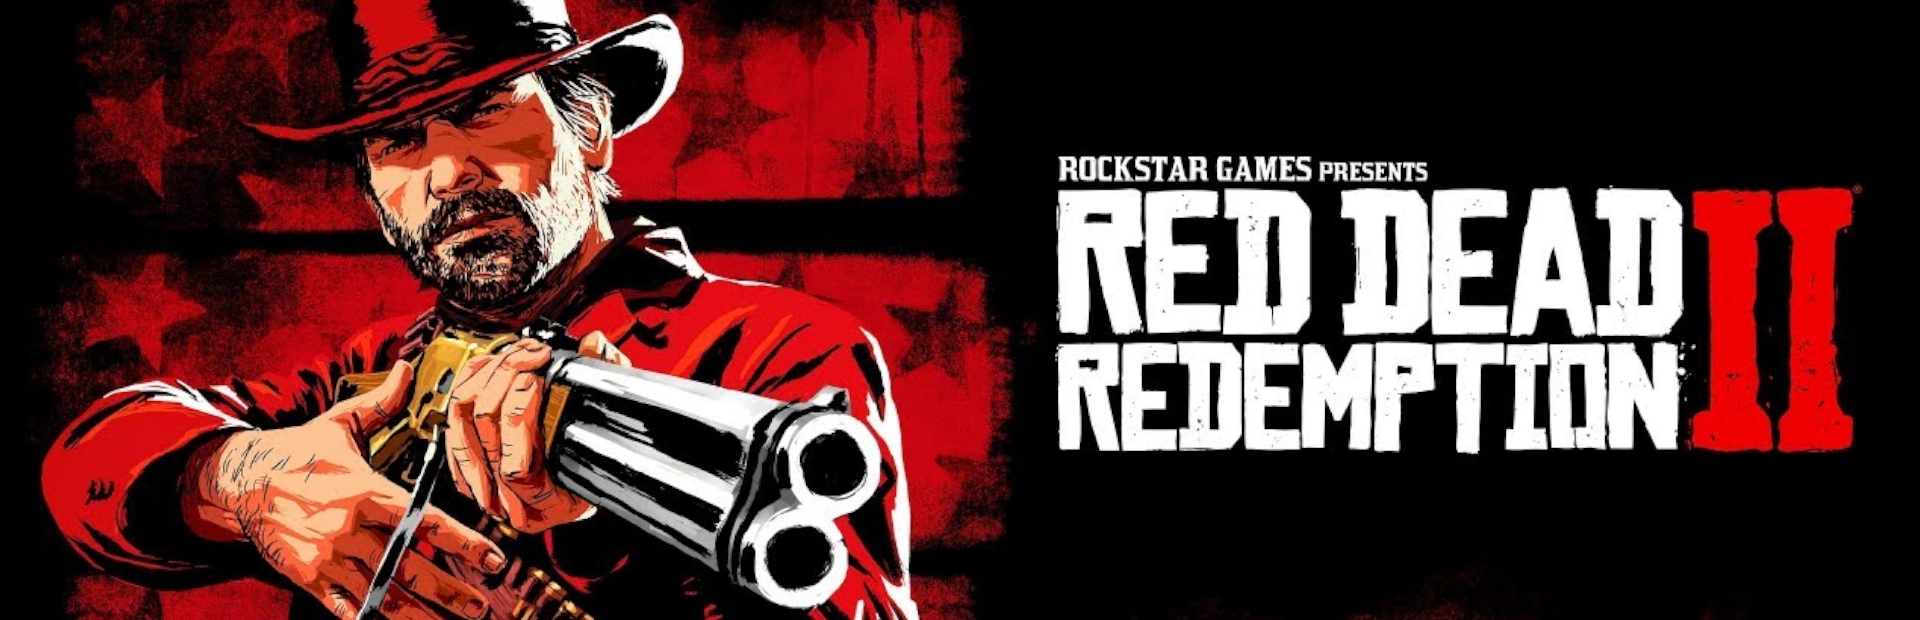  دانلود بازی Red Dead Redemption 2 برای PC  | گیمباتو